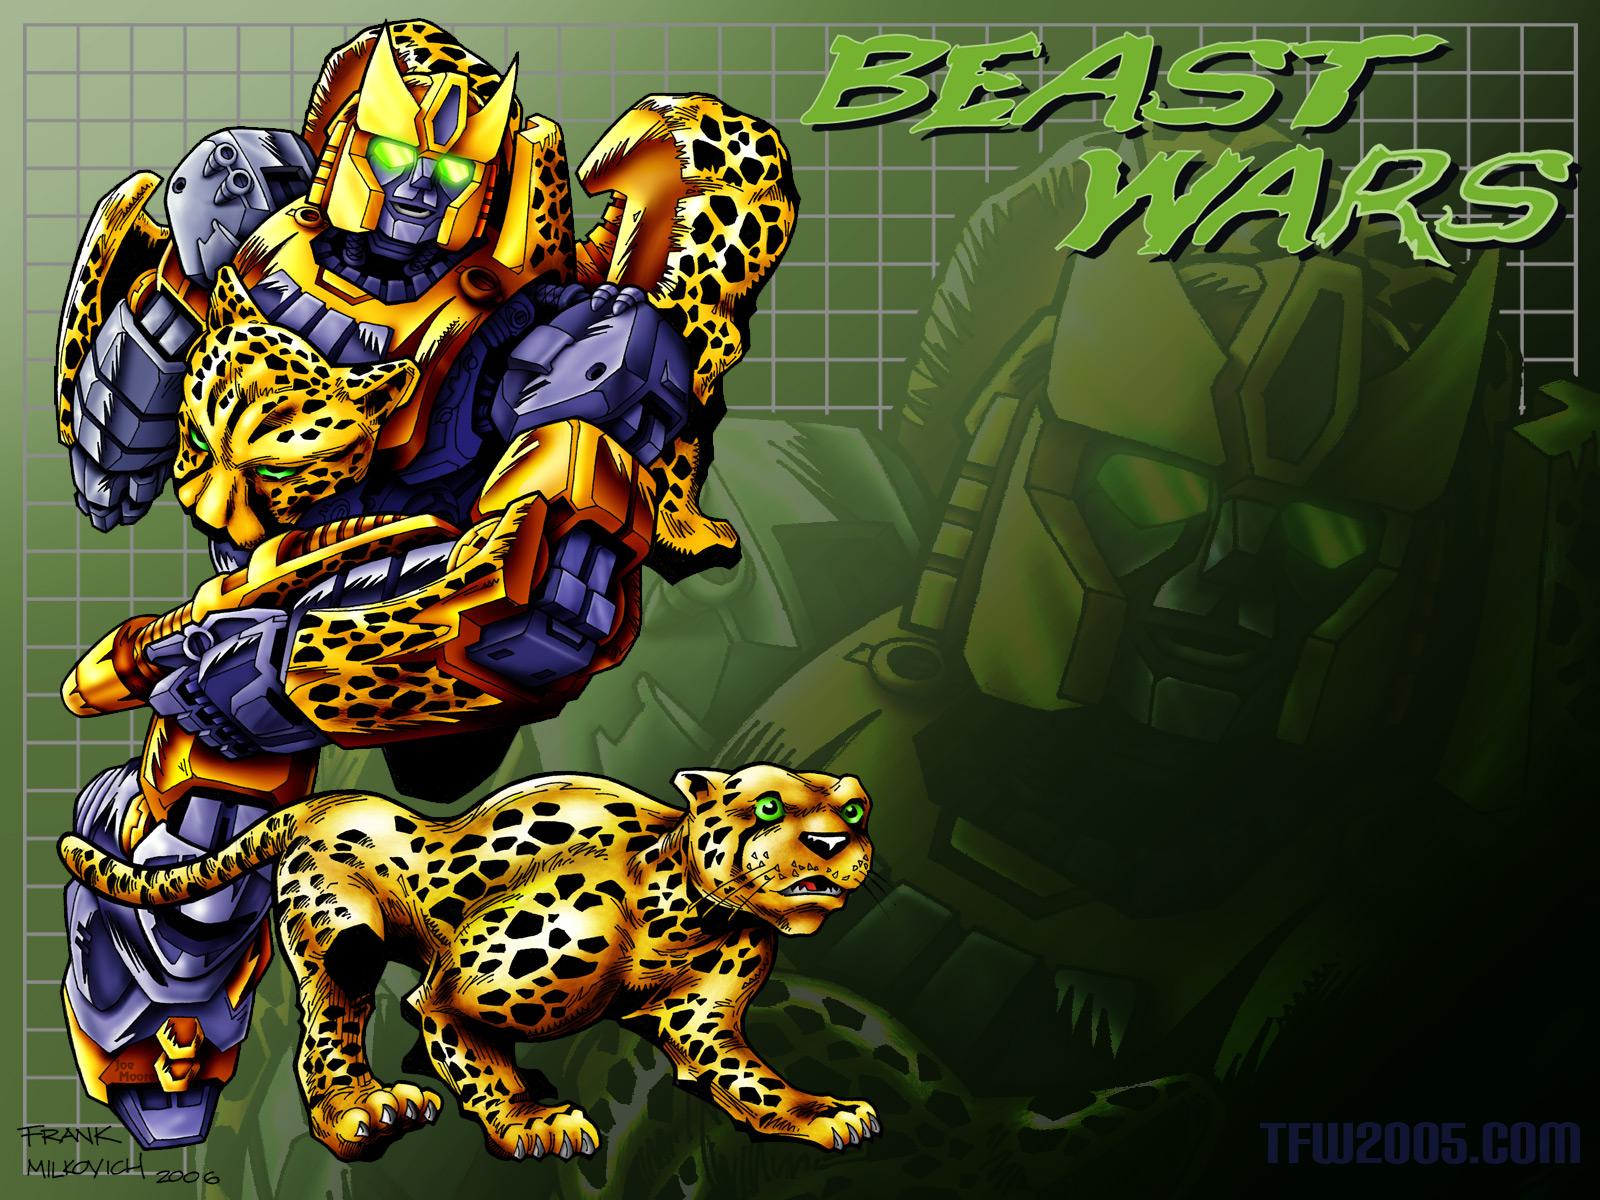 Beast Wars: Transformers wallpaper, Cartoon, HQ Beast Wars